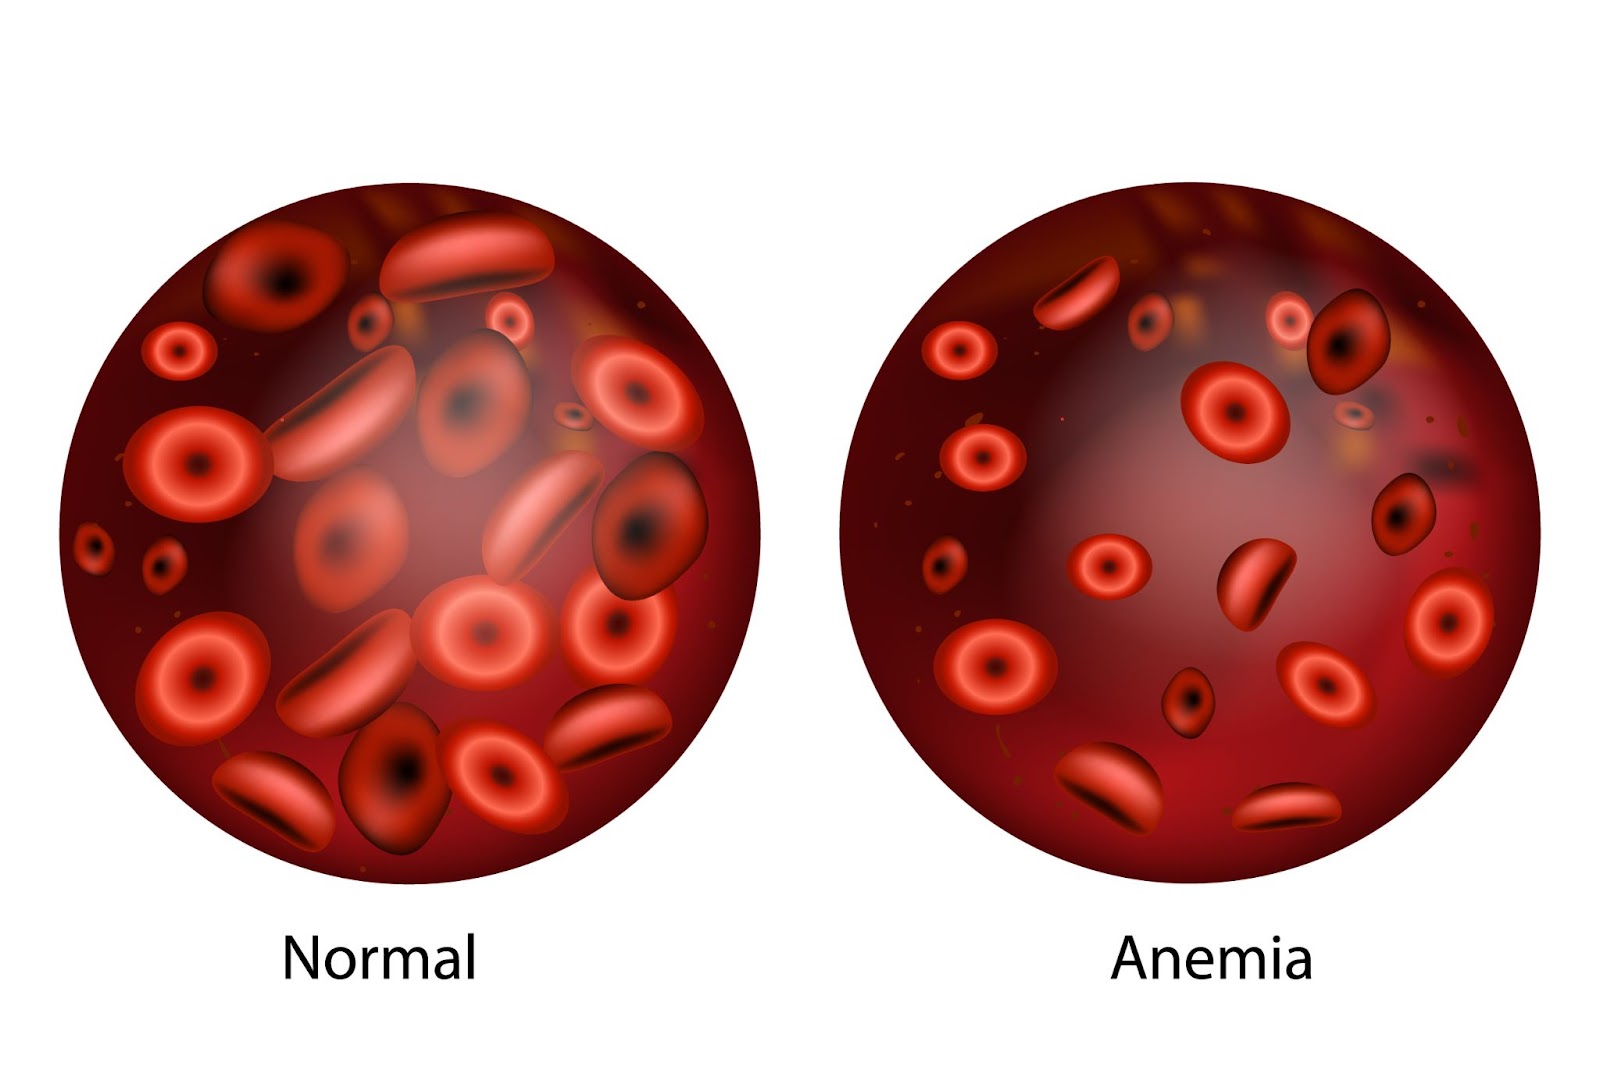 الفرق بين كمية خلايا الدم الحمراء في دم الإنسان السليم والمصاب بأنيميا